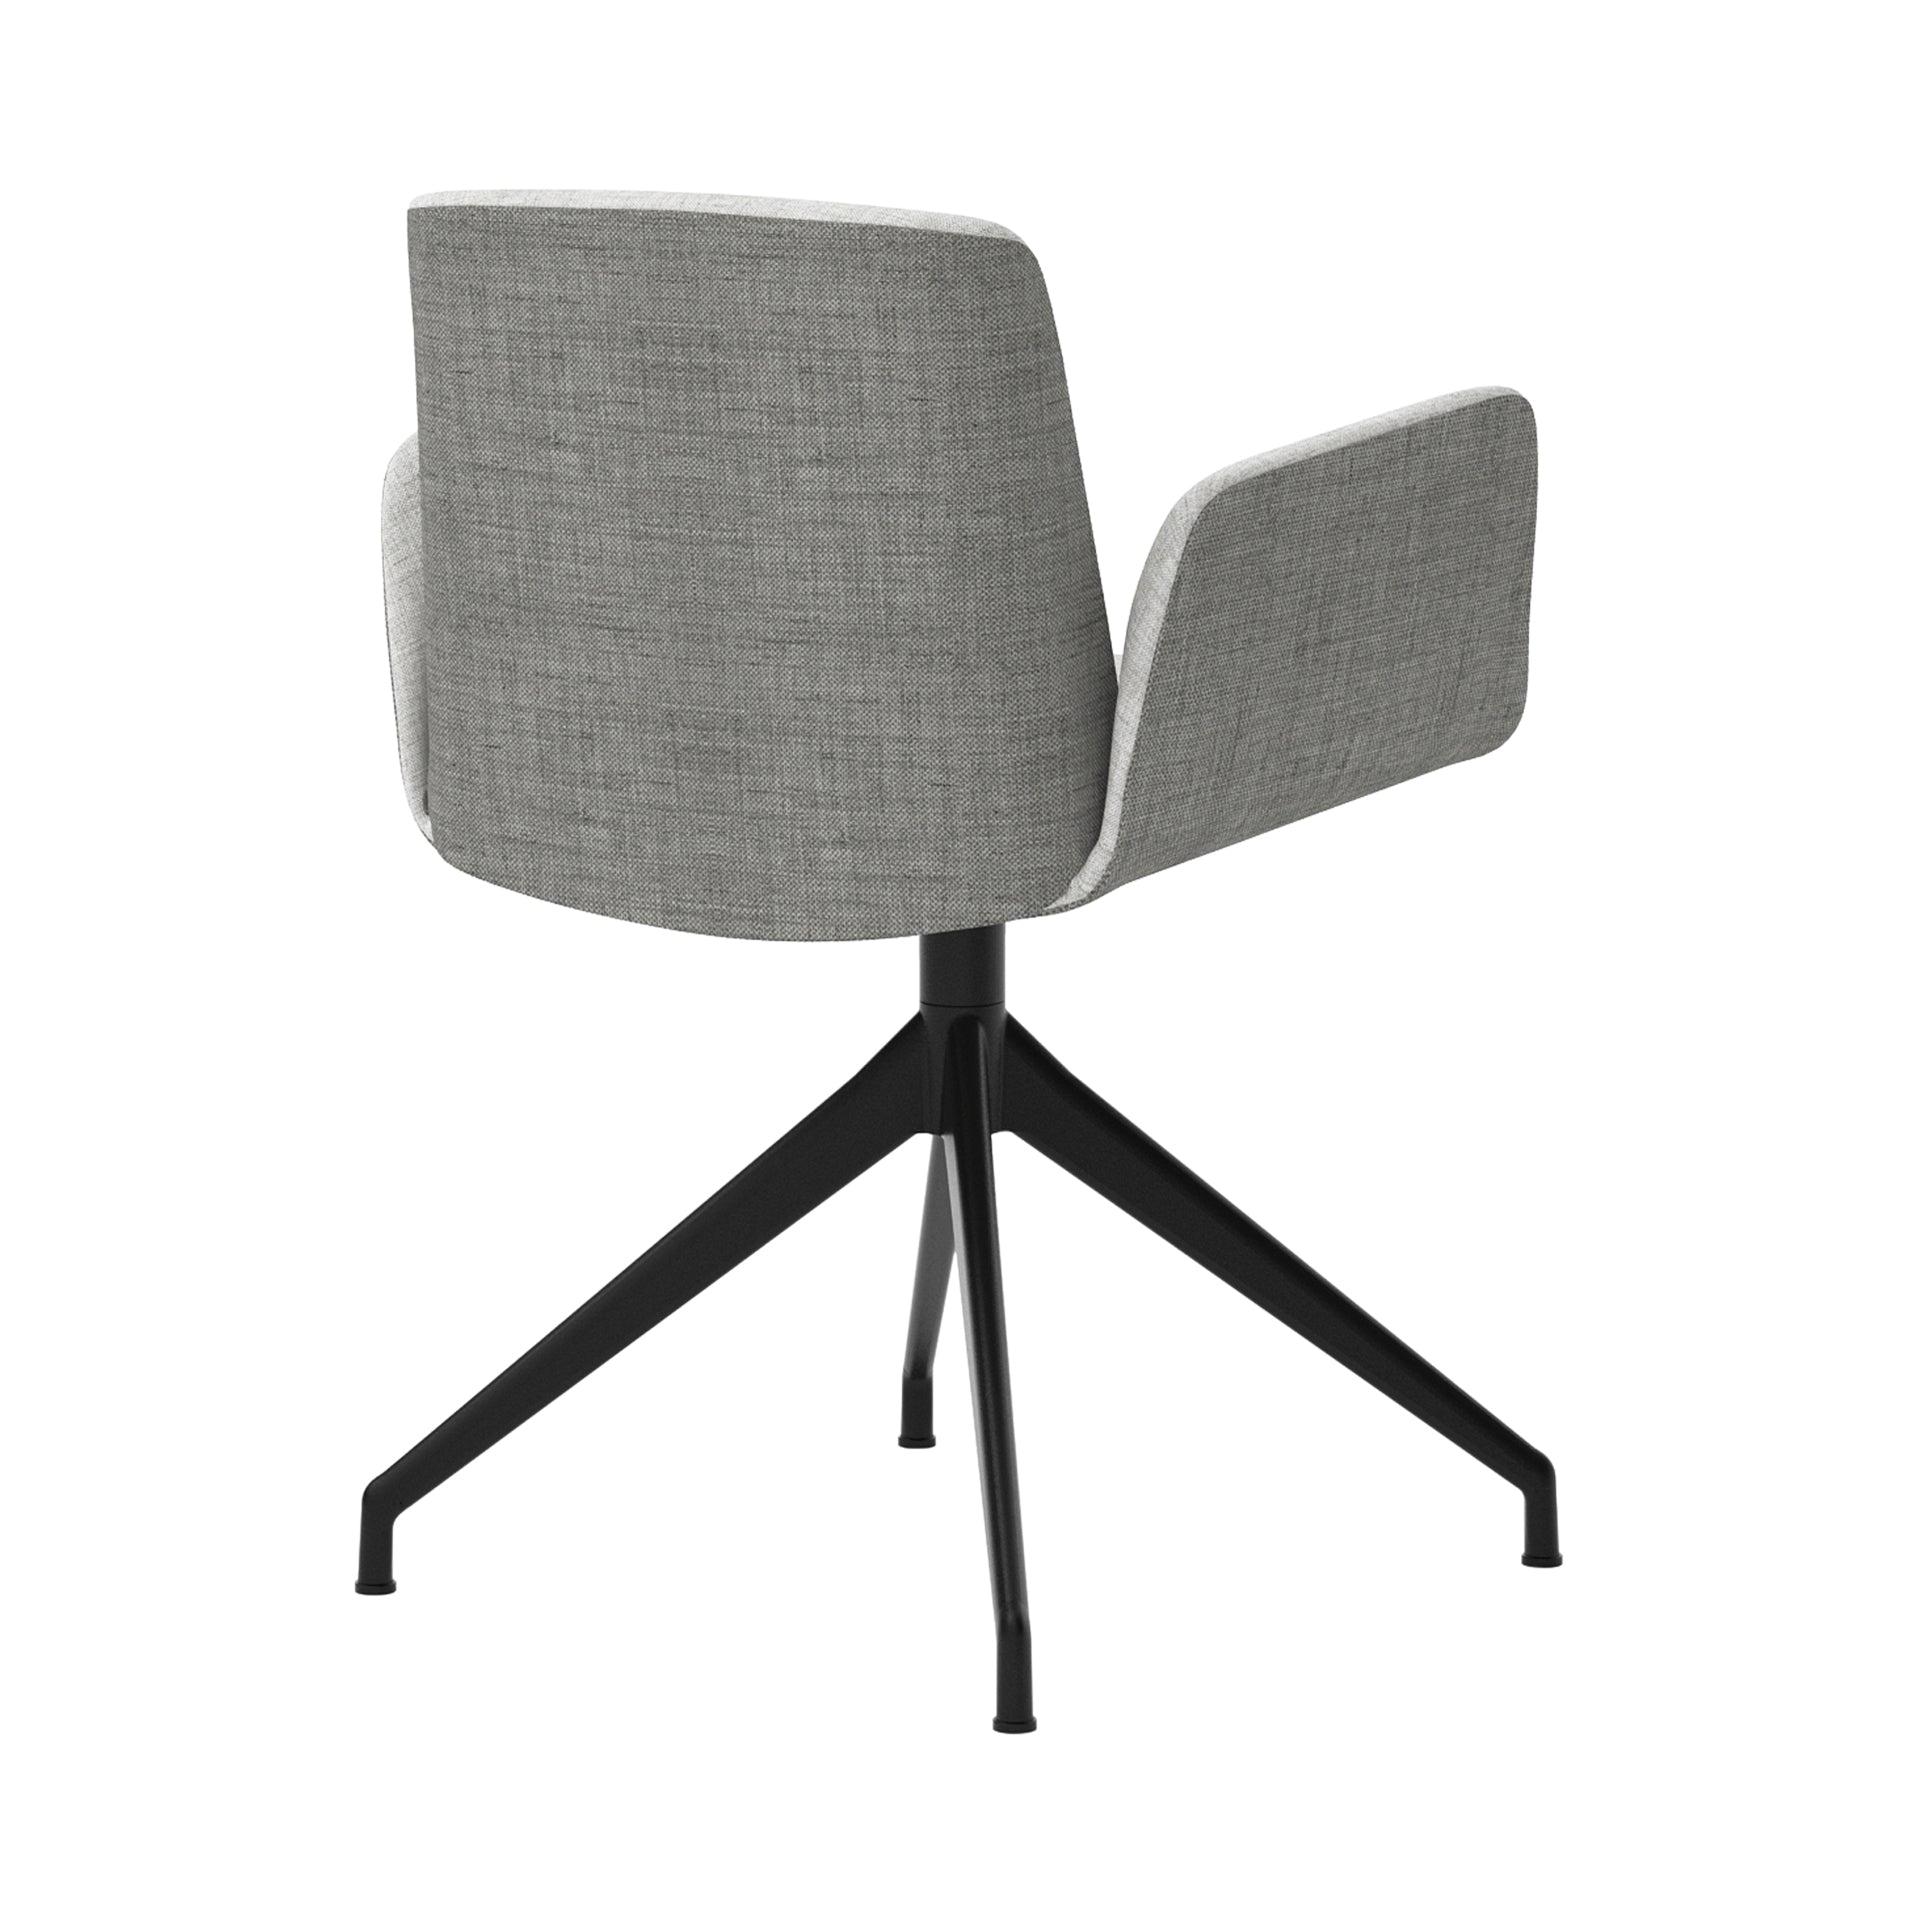 Hug 4 Star Swivel Base Chair: Fully Upholstered + Black